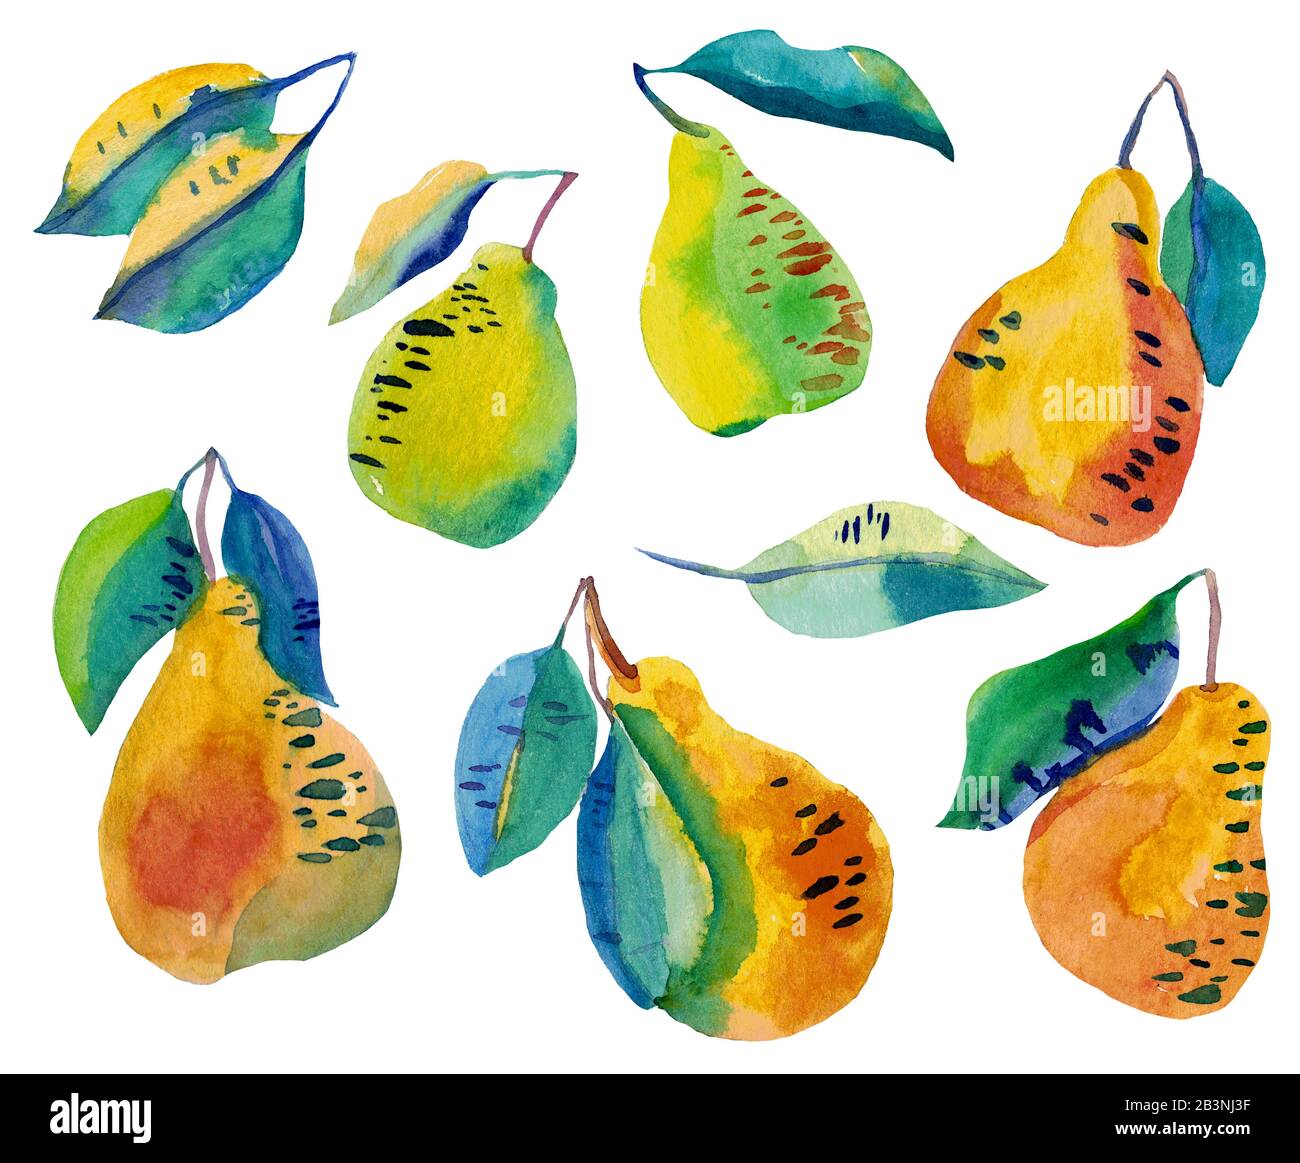 Wasserfarben-Set aus verrückten lustigen Birnen mit auf Weiß isolierten Blättern. Sommer kühle Früchte in Kontrastfarben grün-gelb. Modernes Illustrationsdesign Stockfoto